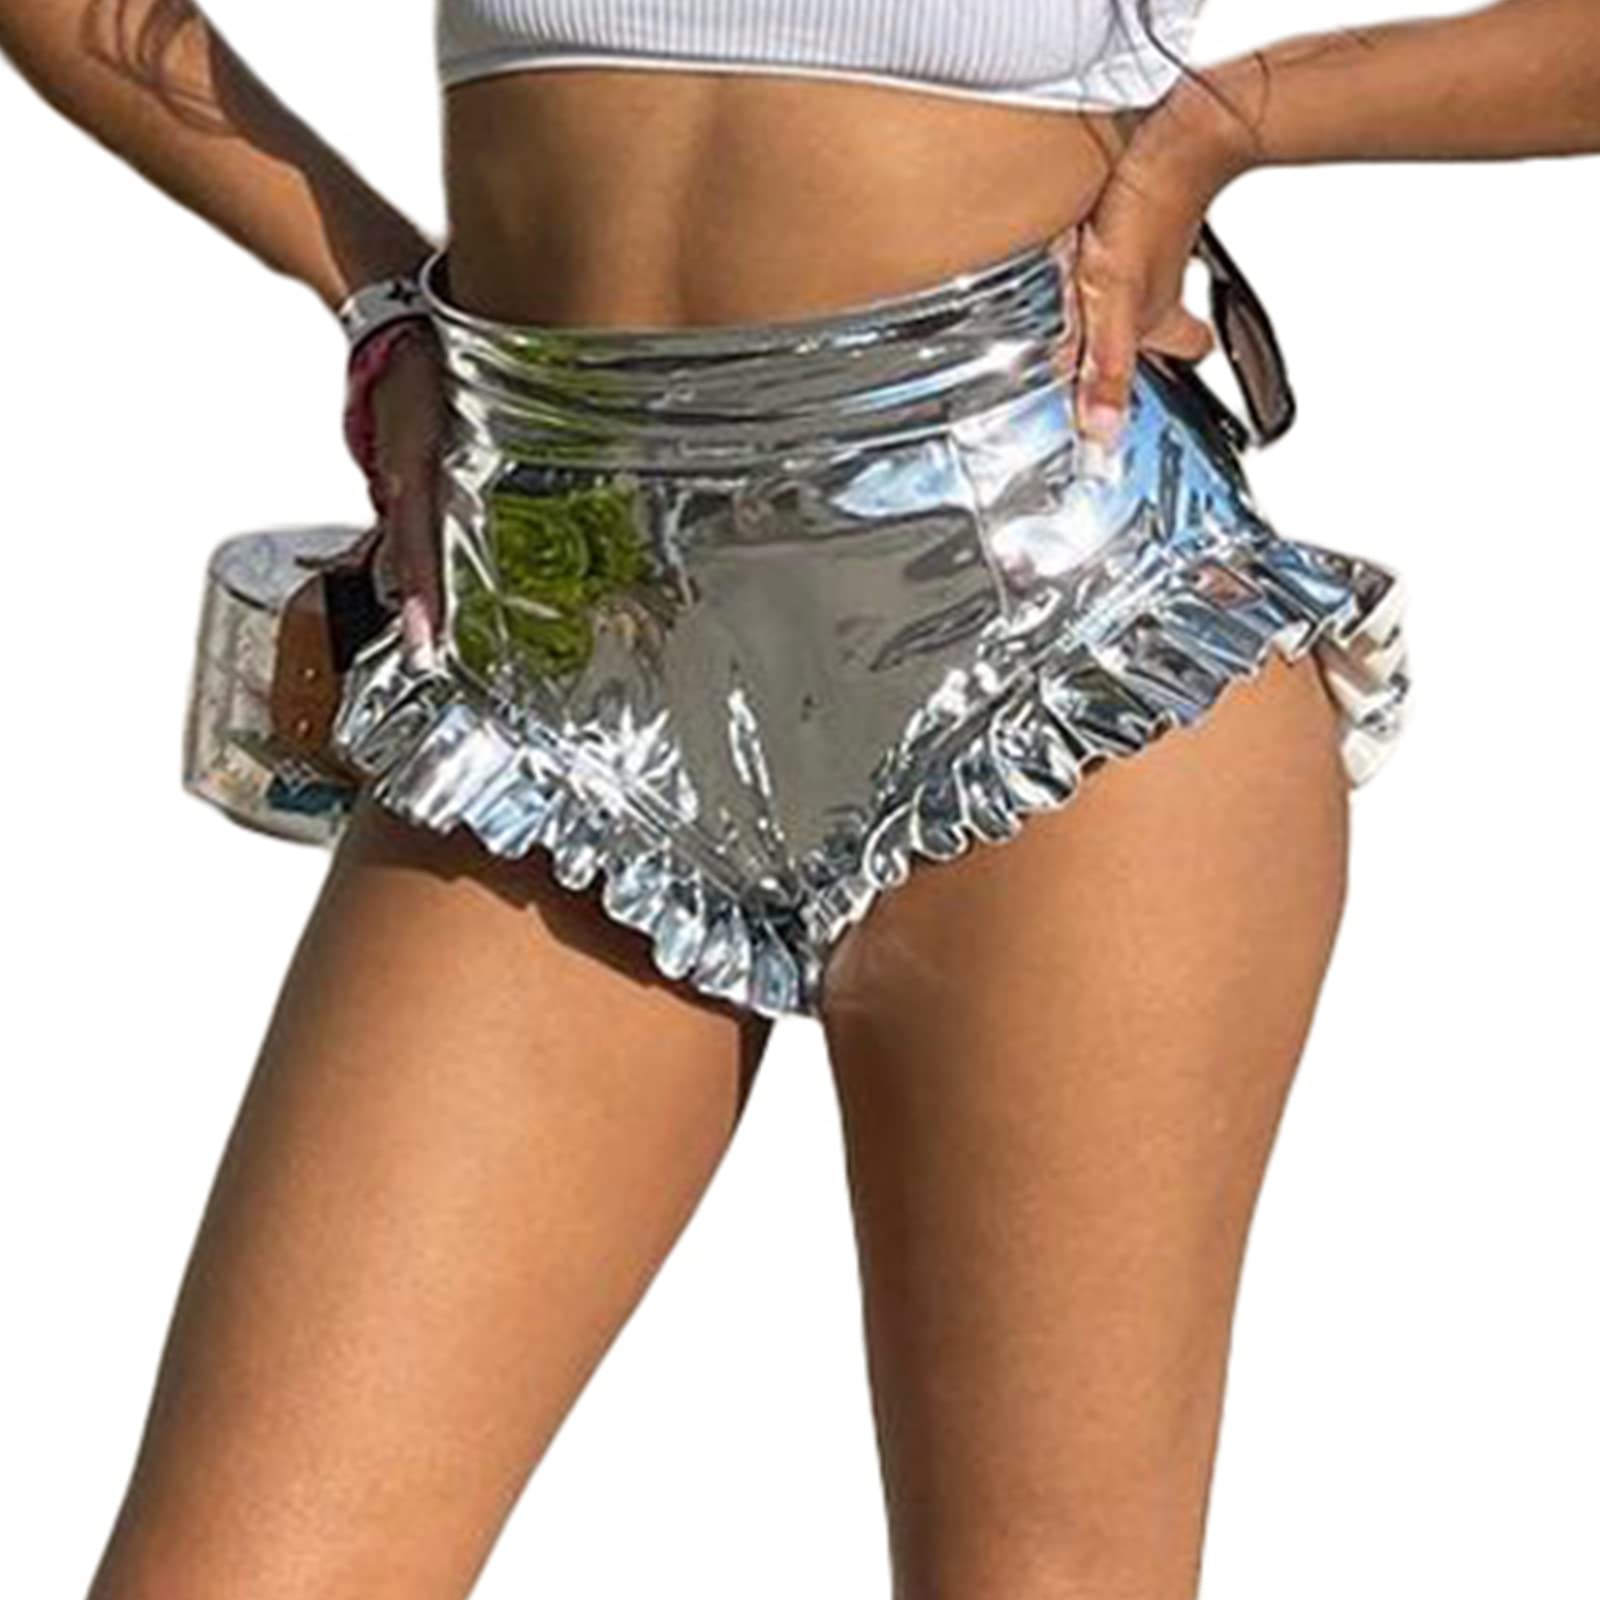 Silver Shorts for Women Metallic - Sexy Shiny Ruffle Booty Shorts